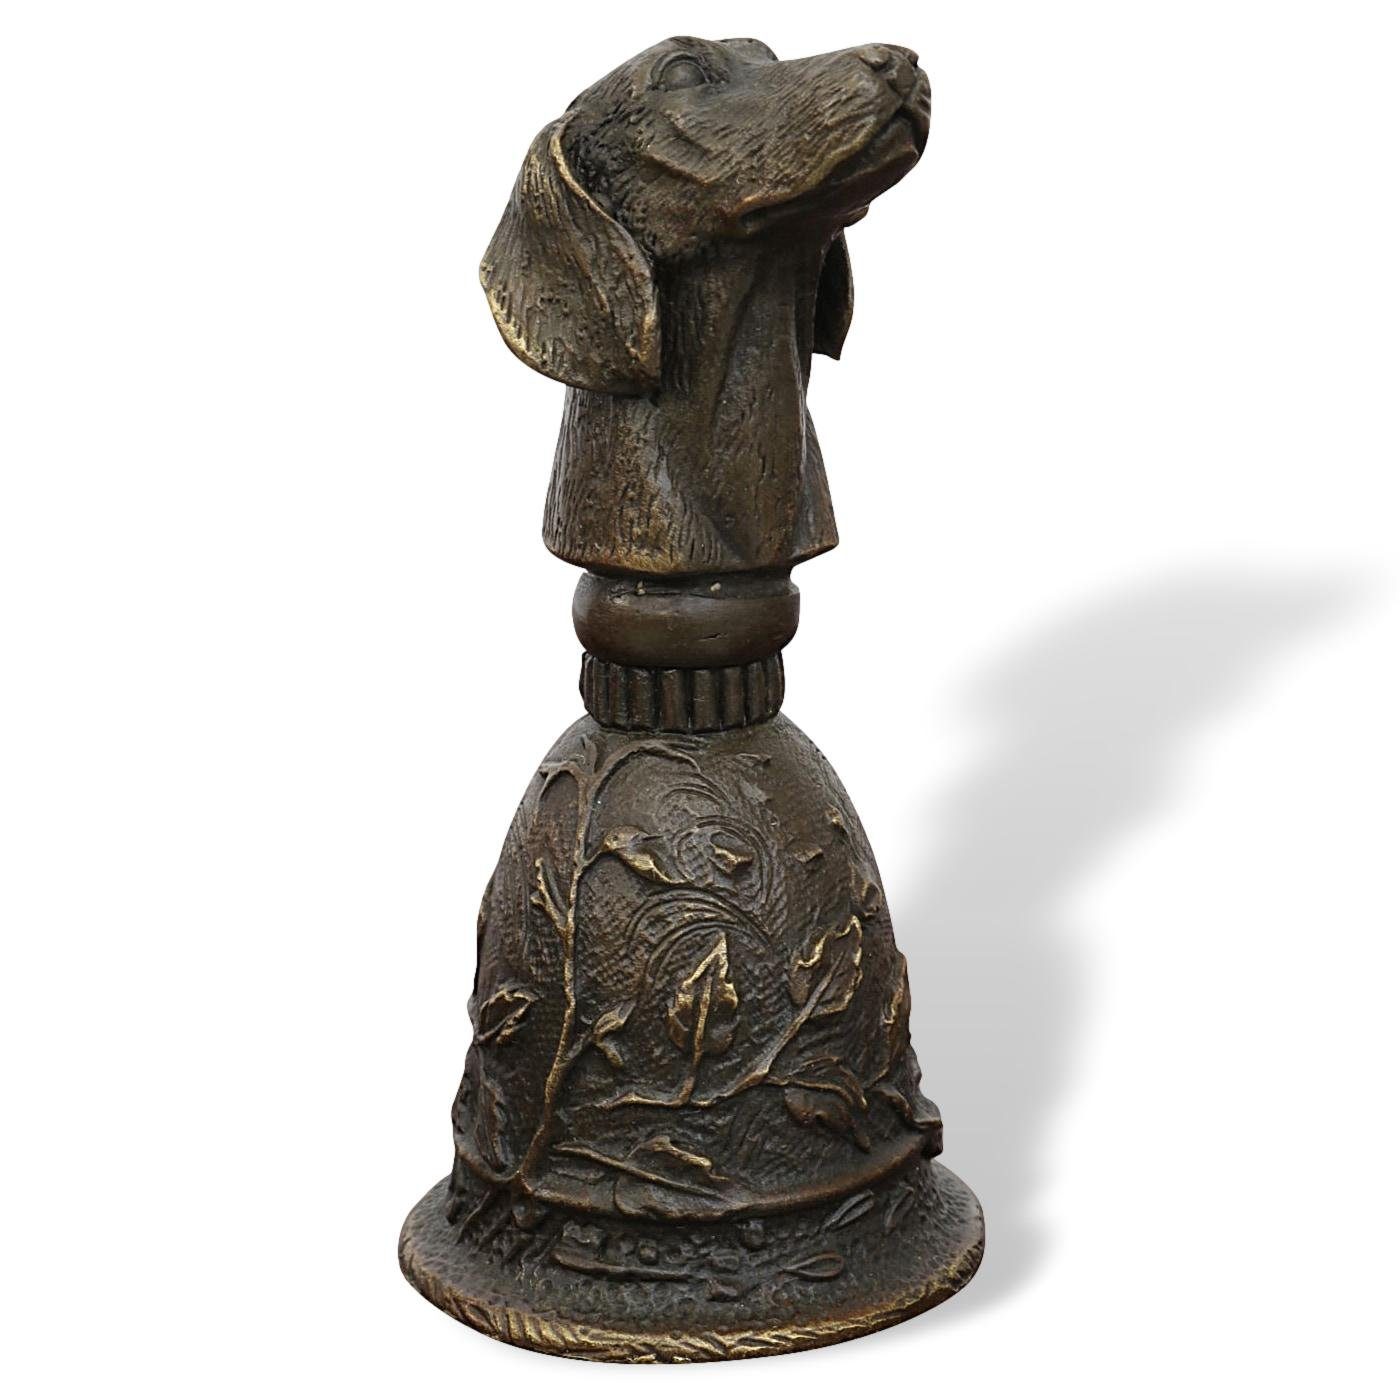 Aubaho Dekoobjekt Tischglocke Hund Handglocke Glocke Bronzeskulptur Antik-Stil Bronze Figur